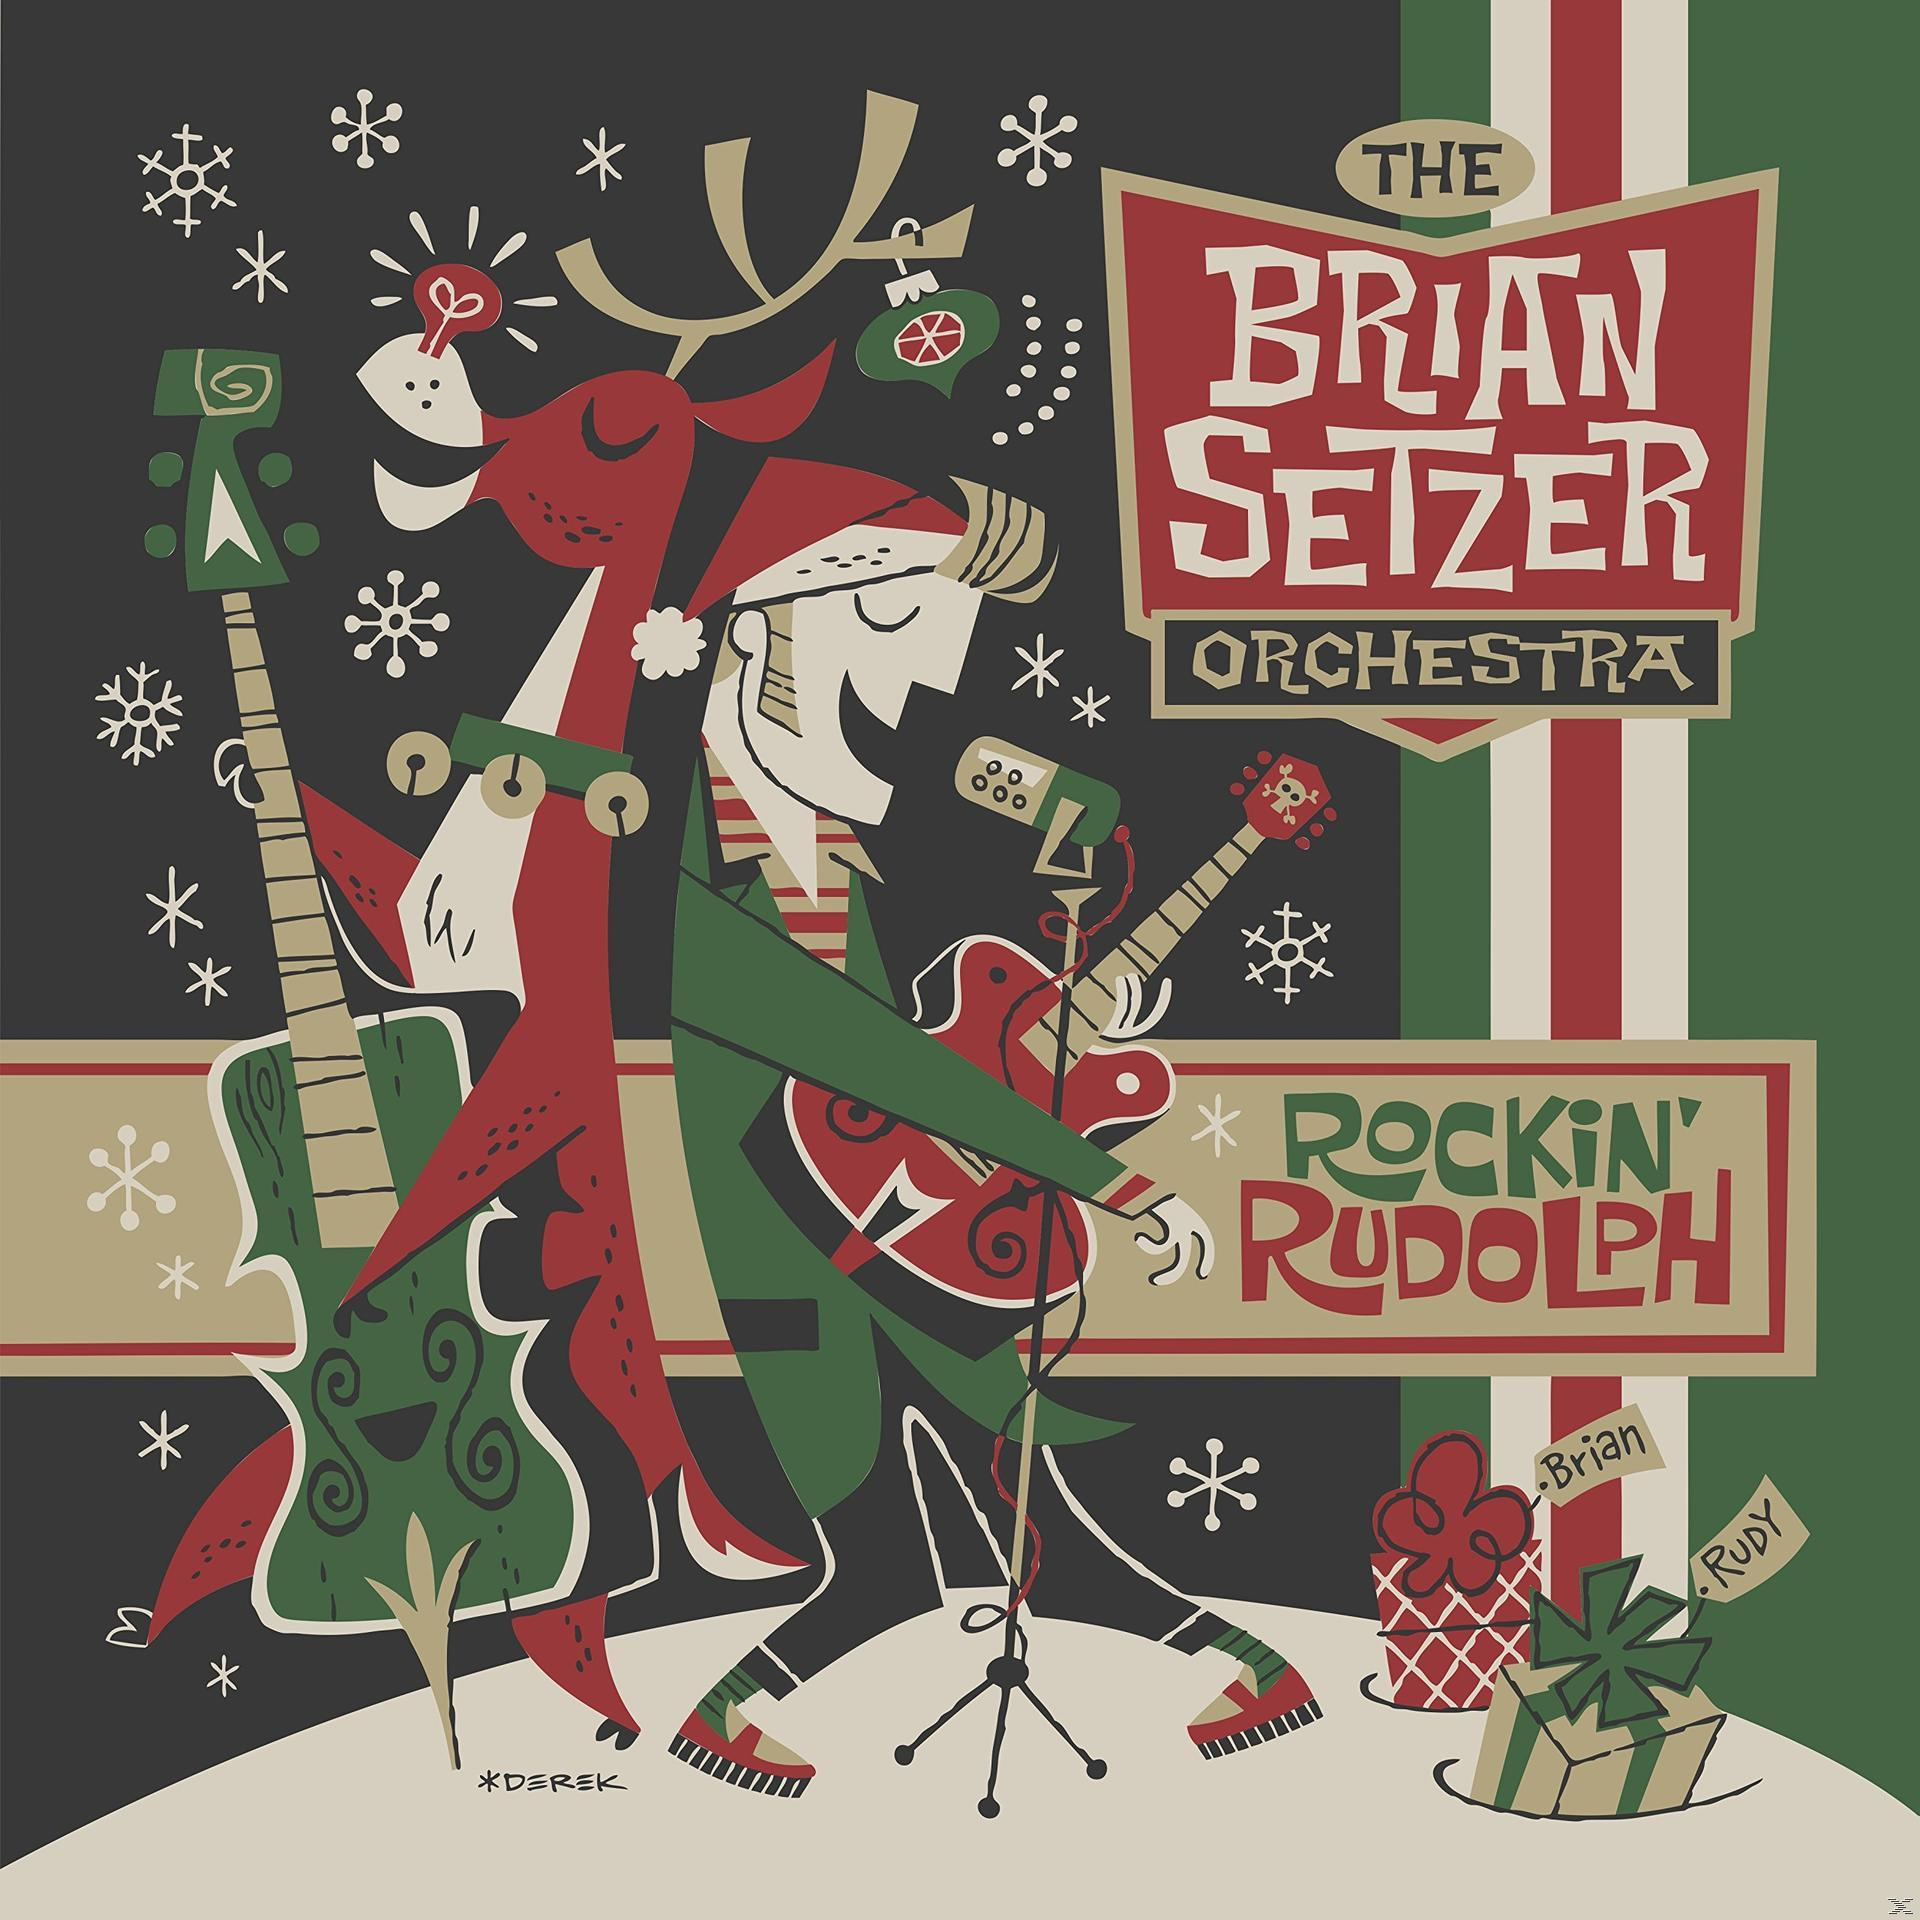 Orchestra Brian - (CD) - Setzer Rudolph Rockin\'